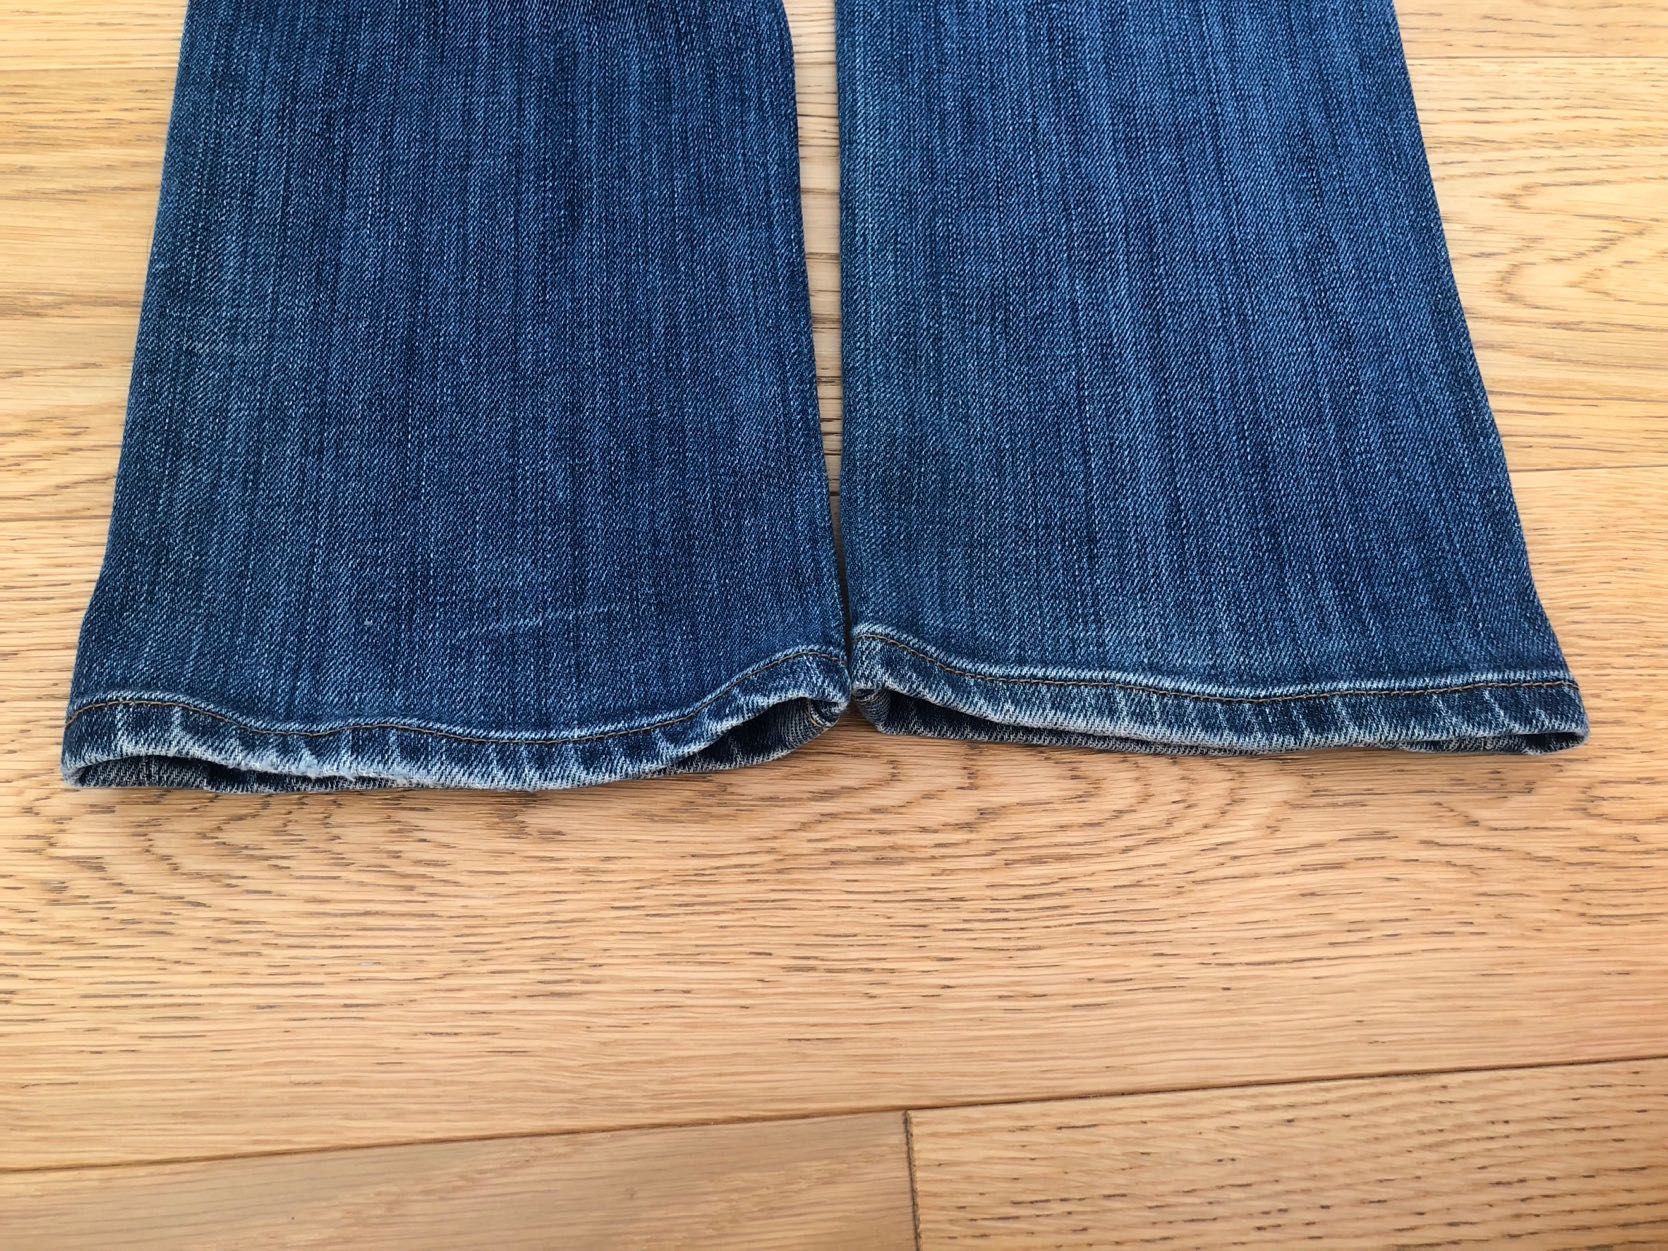 Damskie jeansy z niskim stanem (low waist), Lee (Lynn) - W28 L31